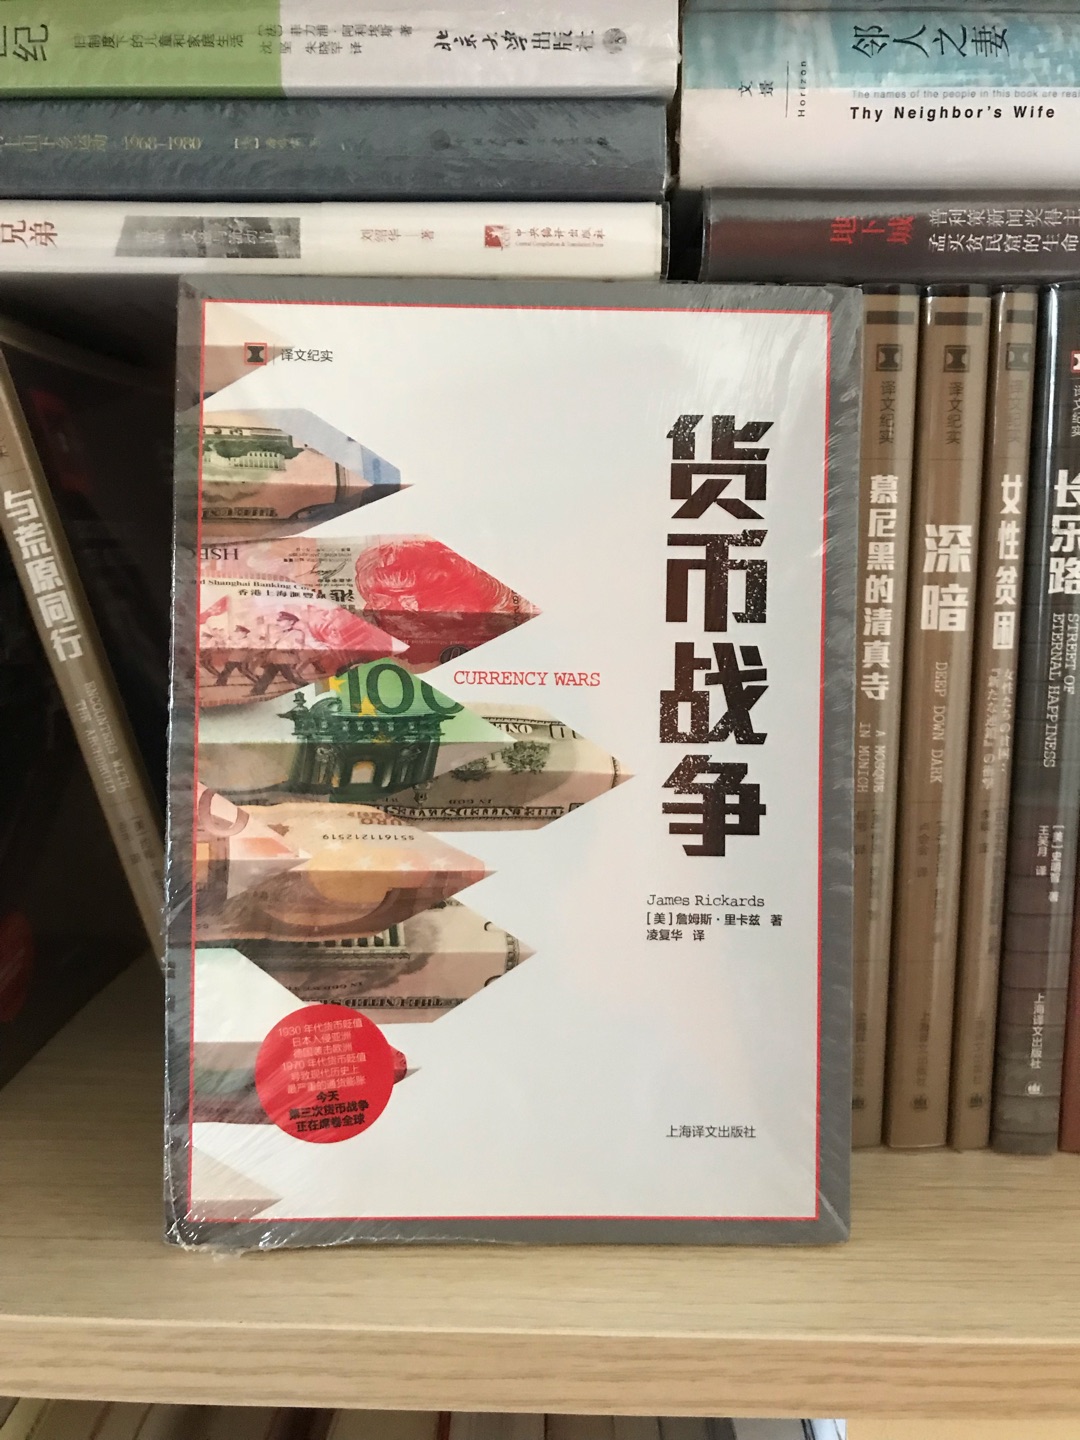 上海译文出版社的这一系列译文纪实的书都非常好。